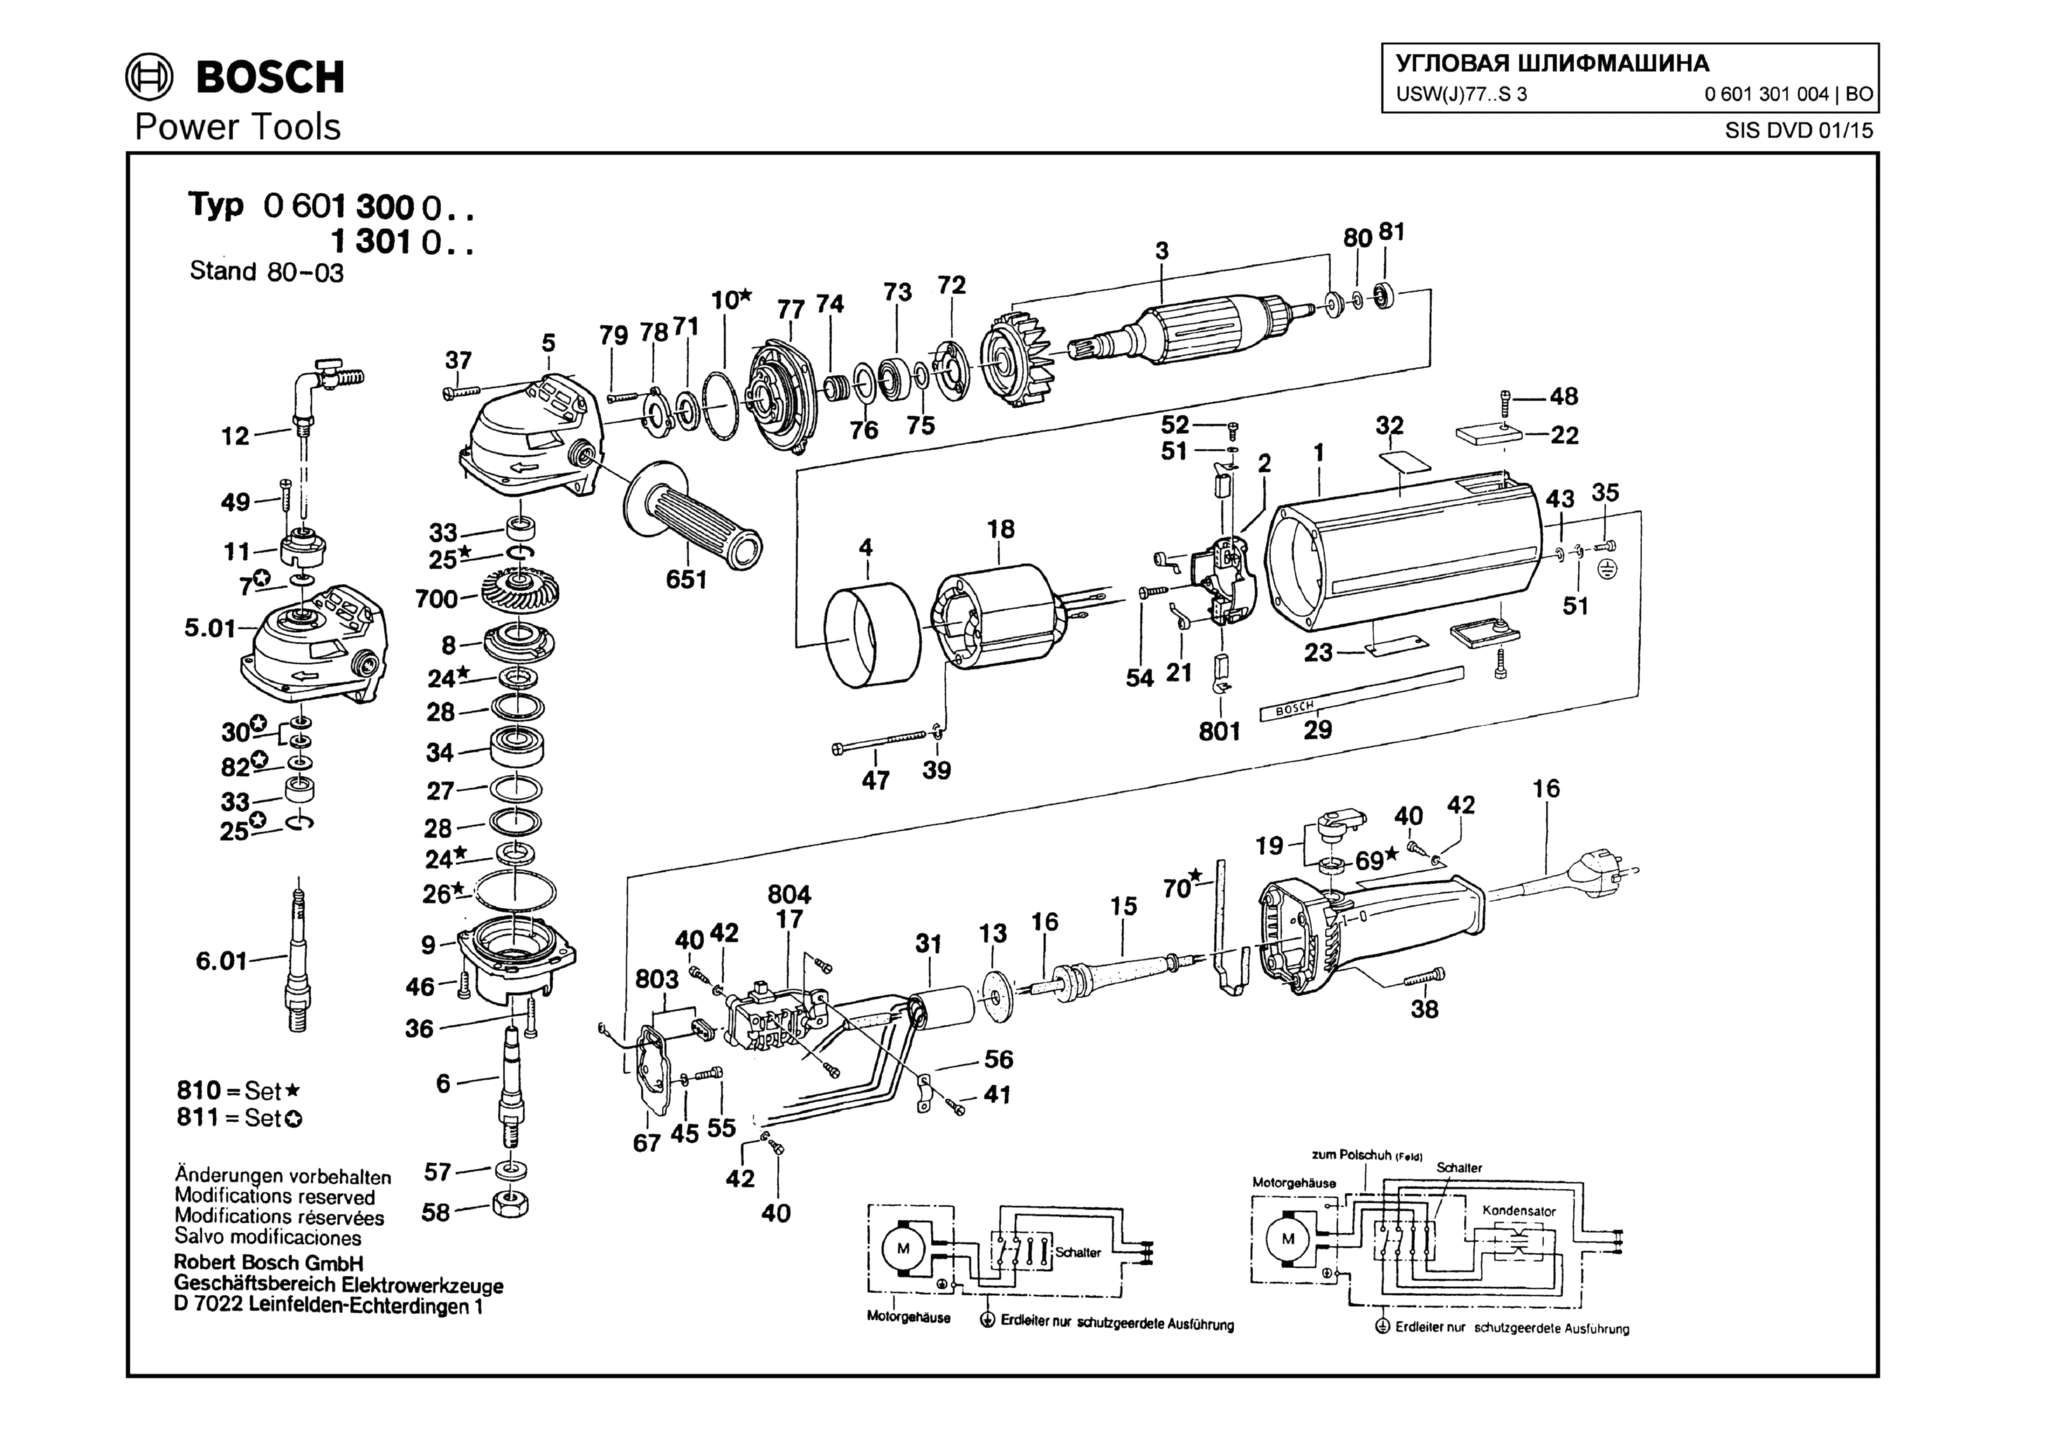 Запчасти, схема и деталировка Bosch USW(J)77..S 3 (ТИП 0601301004)